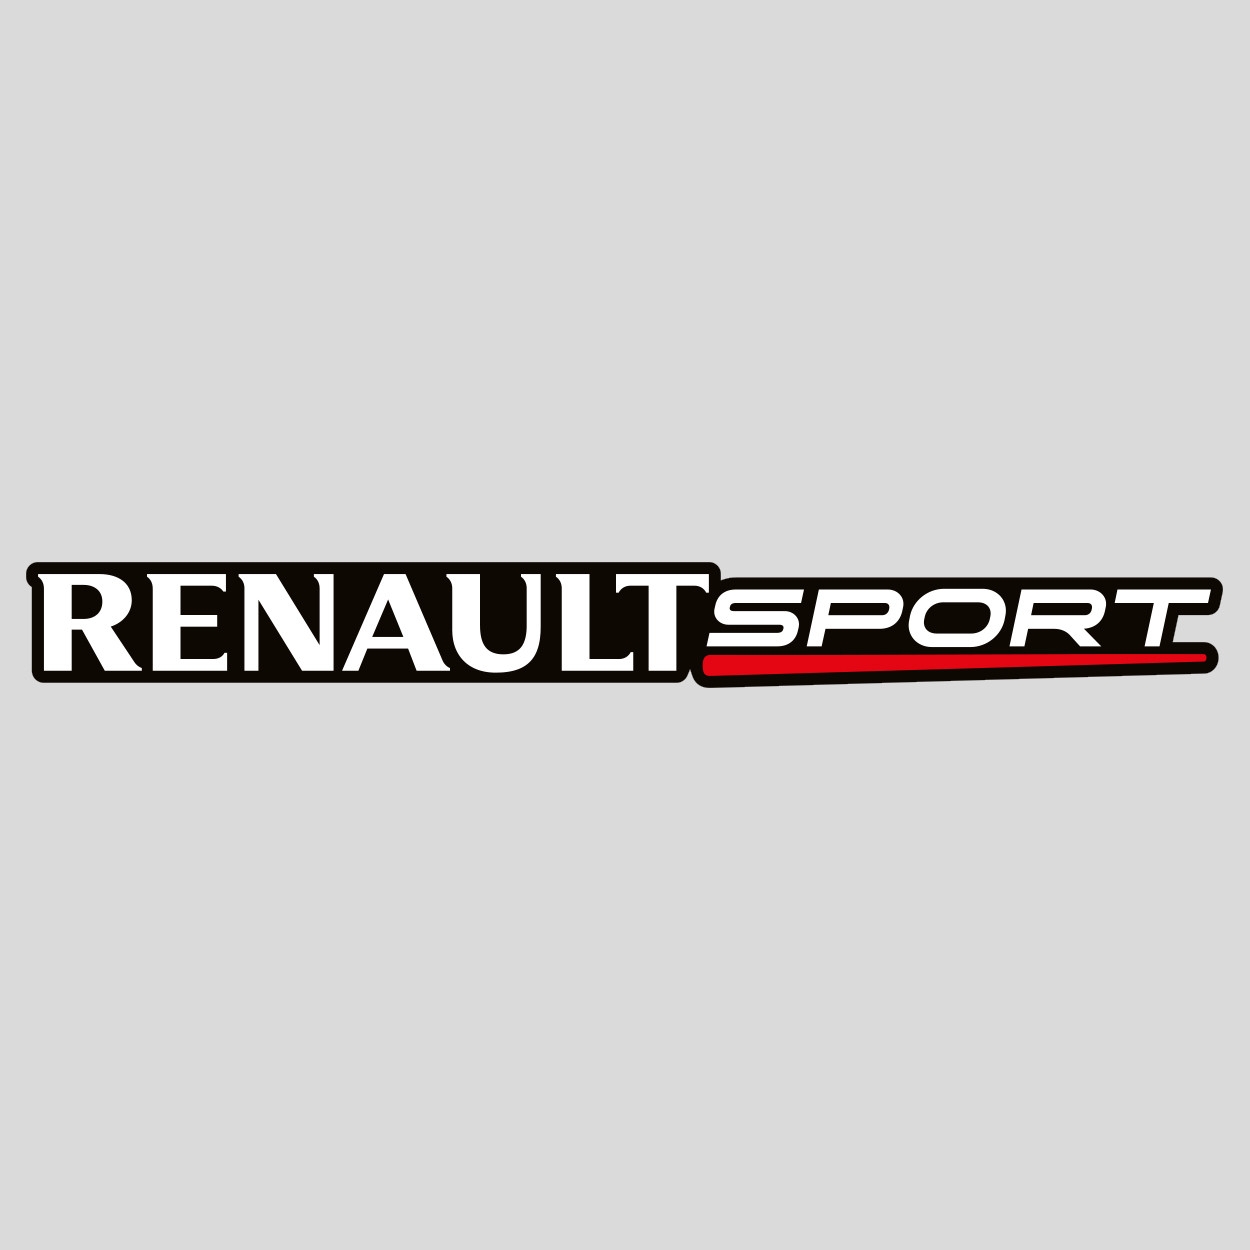 Stickers Renault Sport Des Prix Moins Cher Qu En Magasin